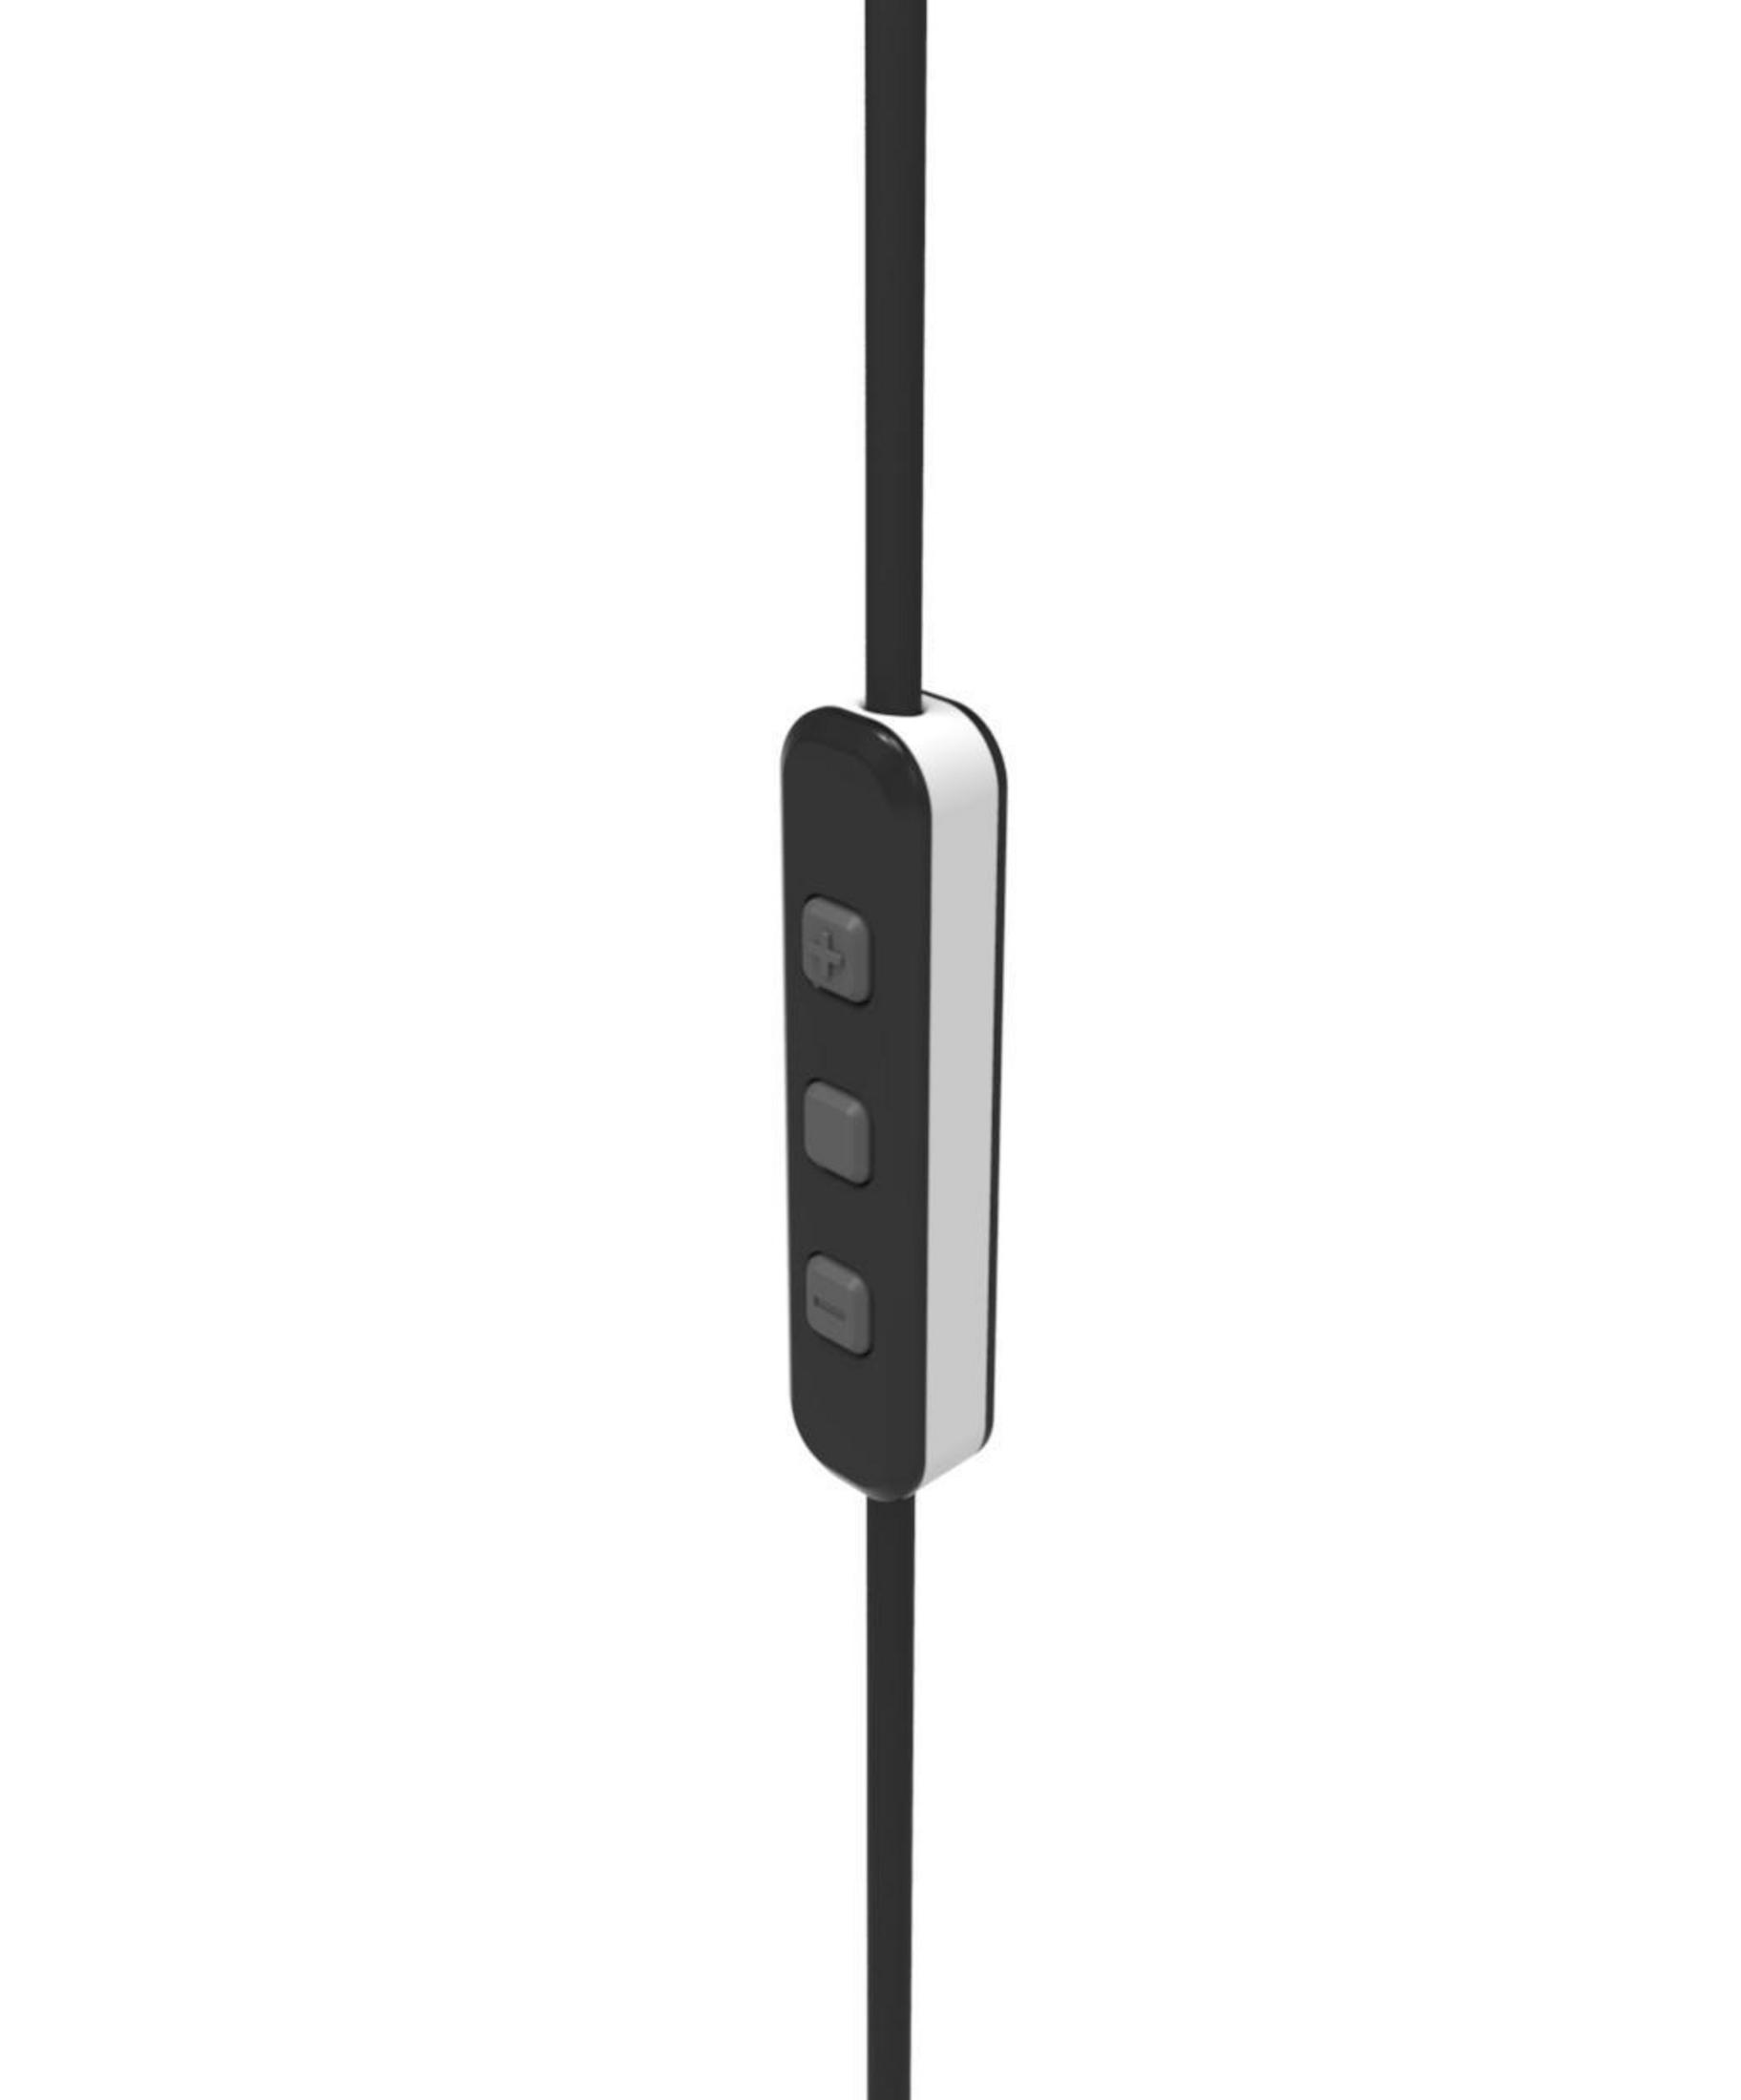 PIONEER SE-CL Bluetooth In-ear BT-W, Kopfhörer 5 Weiß